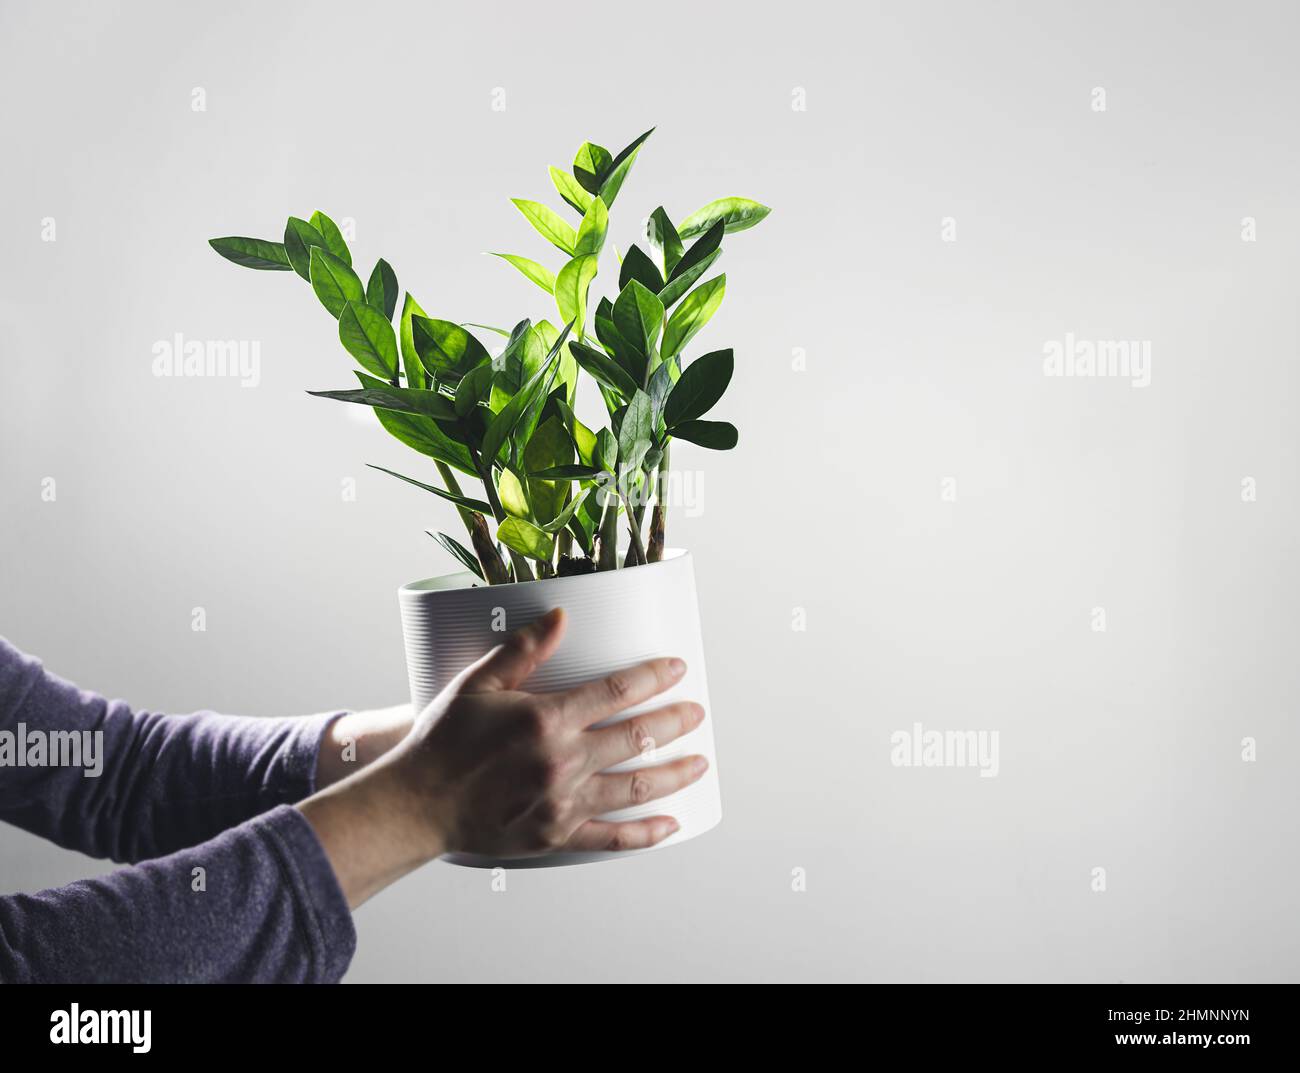 Mani che tengono zamioculcas, o zamiifolia zz pianta in un vaso bianco, giardinaggio casa e pianta decorazione casa concetto, copia spazio Foto Stock